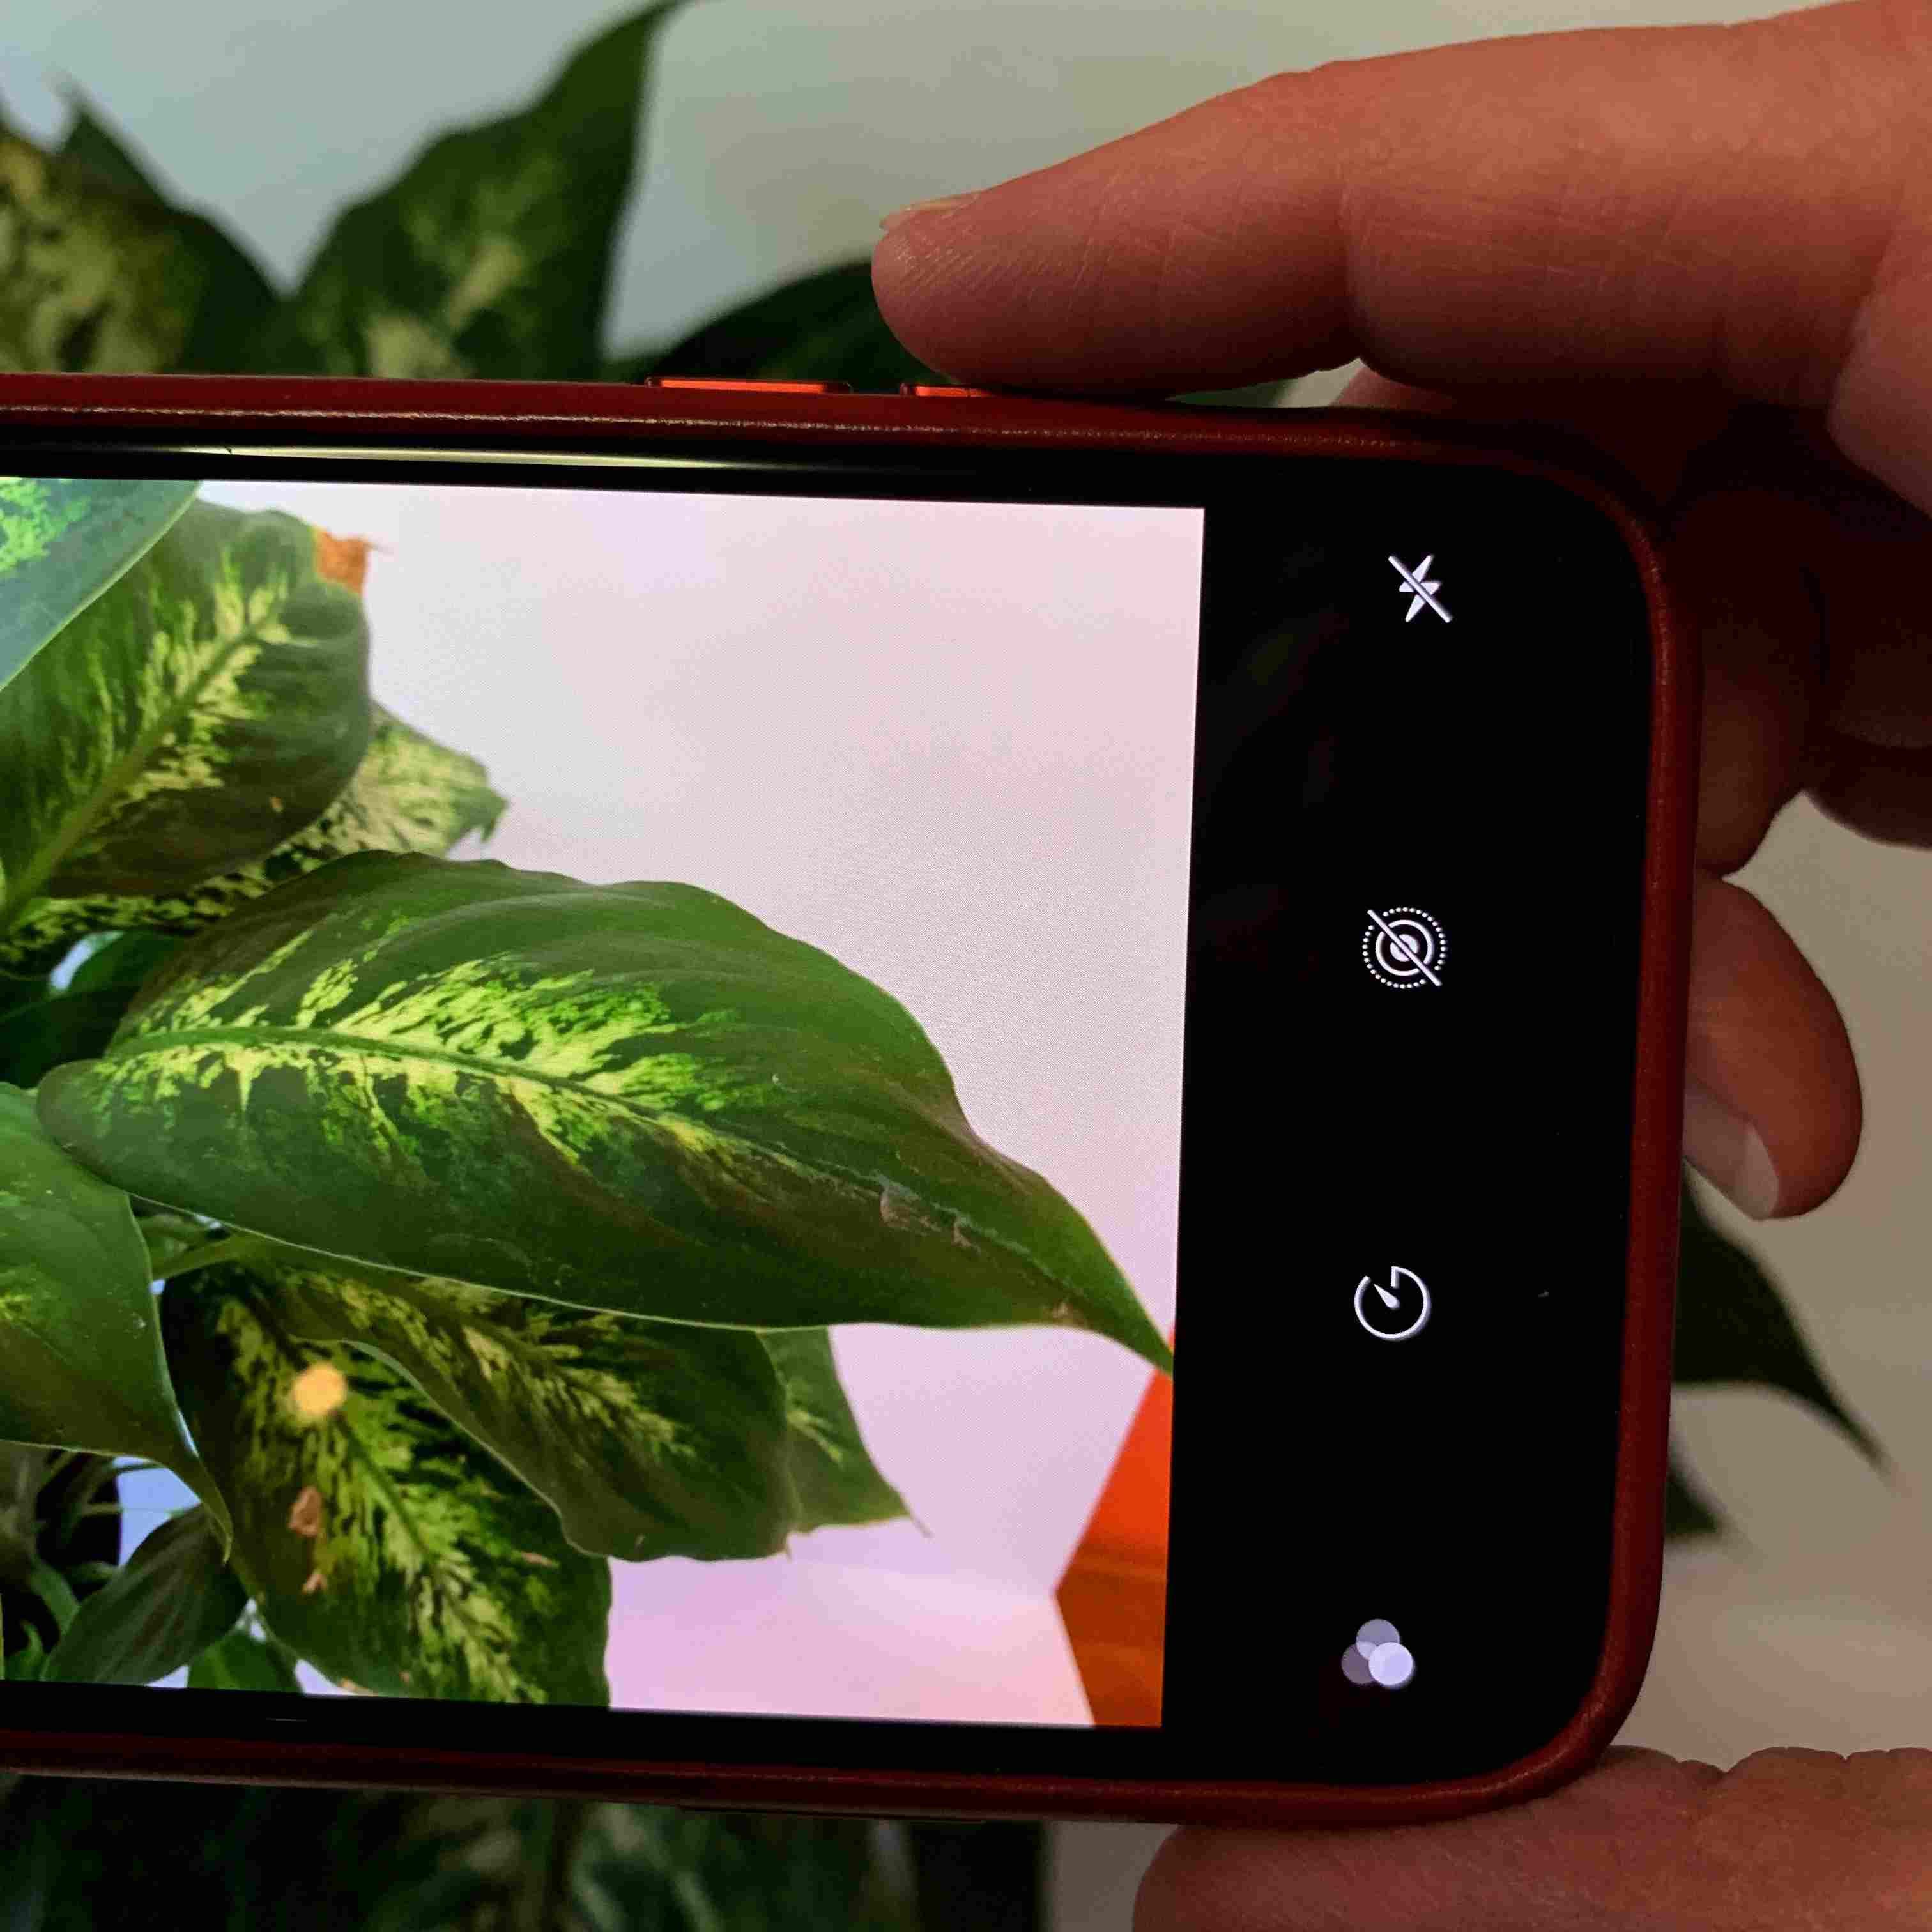 Фотография показывает нажатие кнопки увеличения громкости на iPhone, чтобы сделать снимок